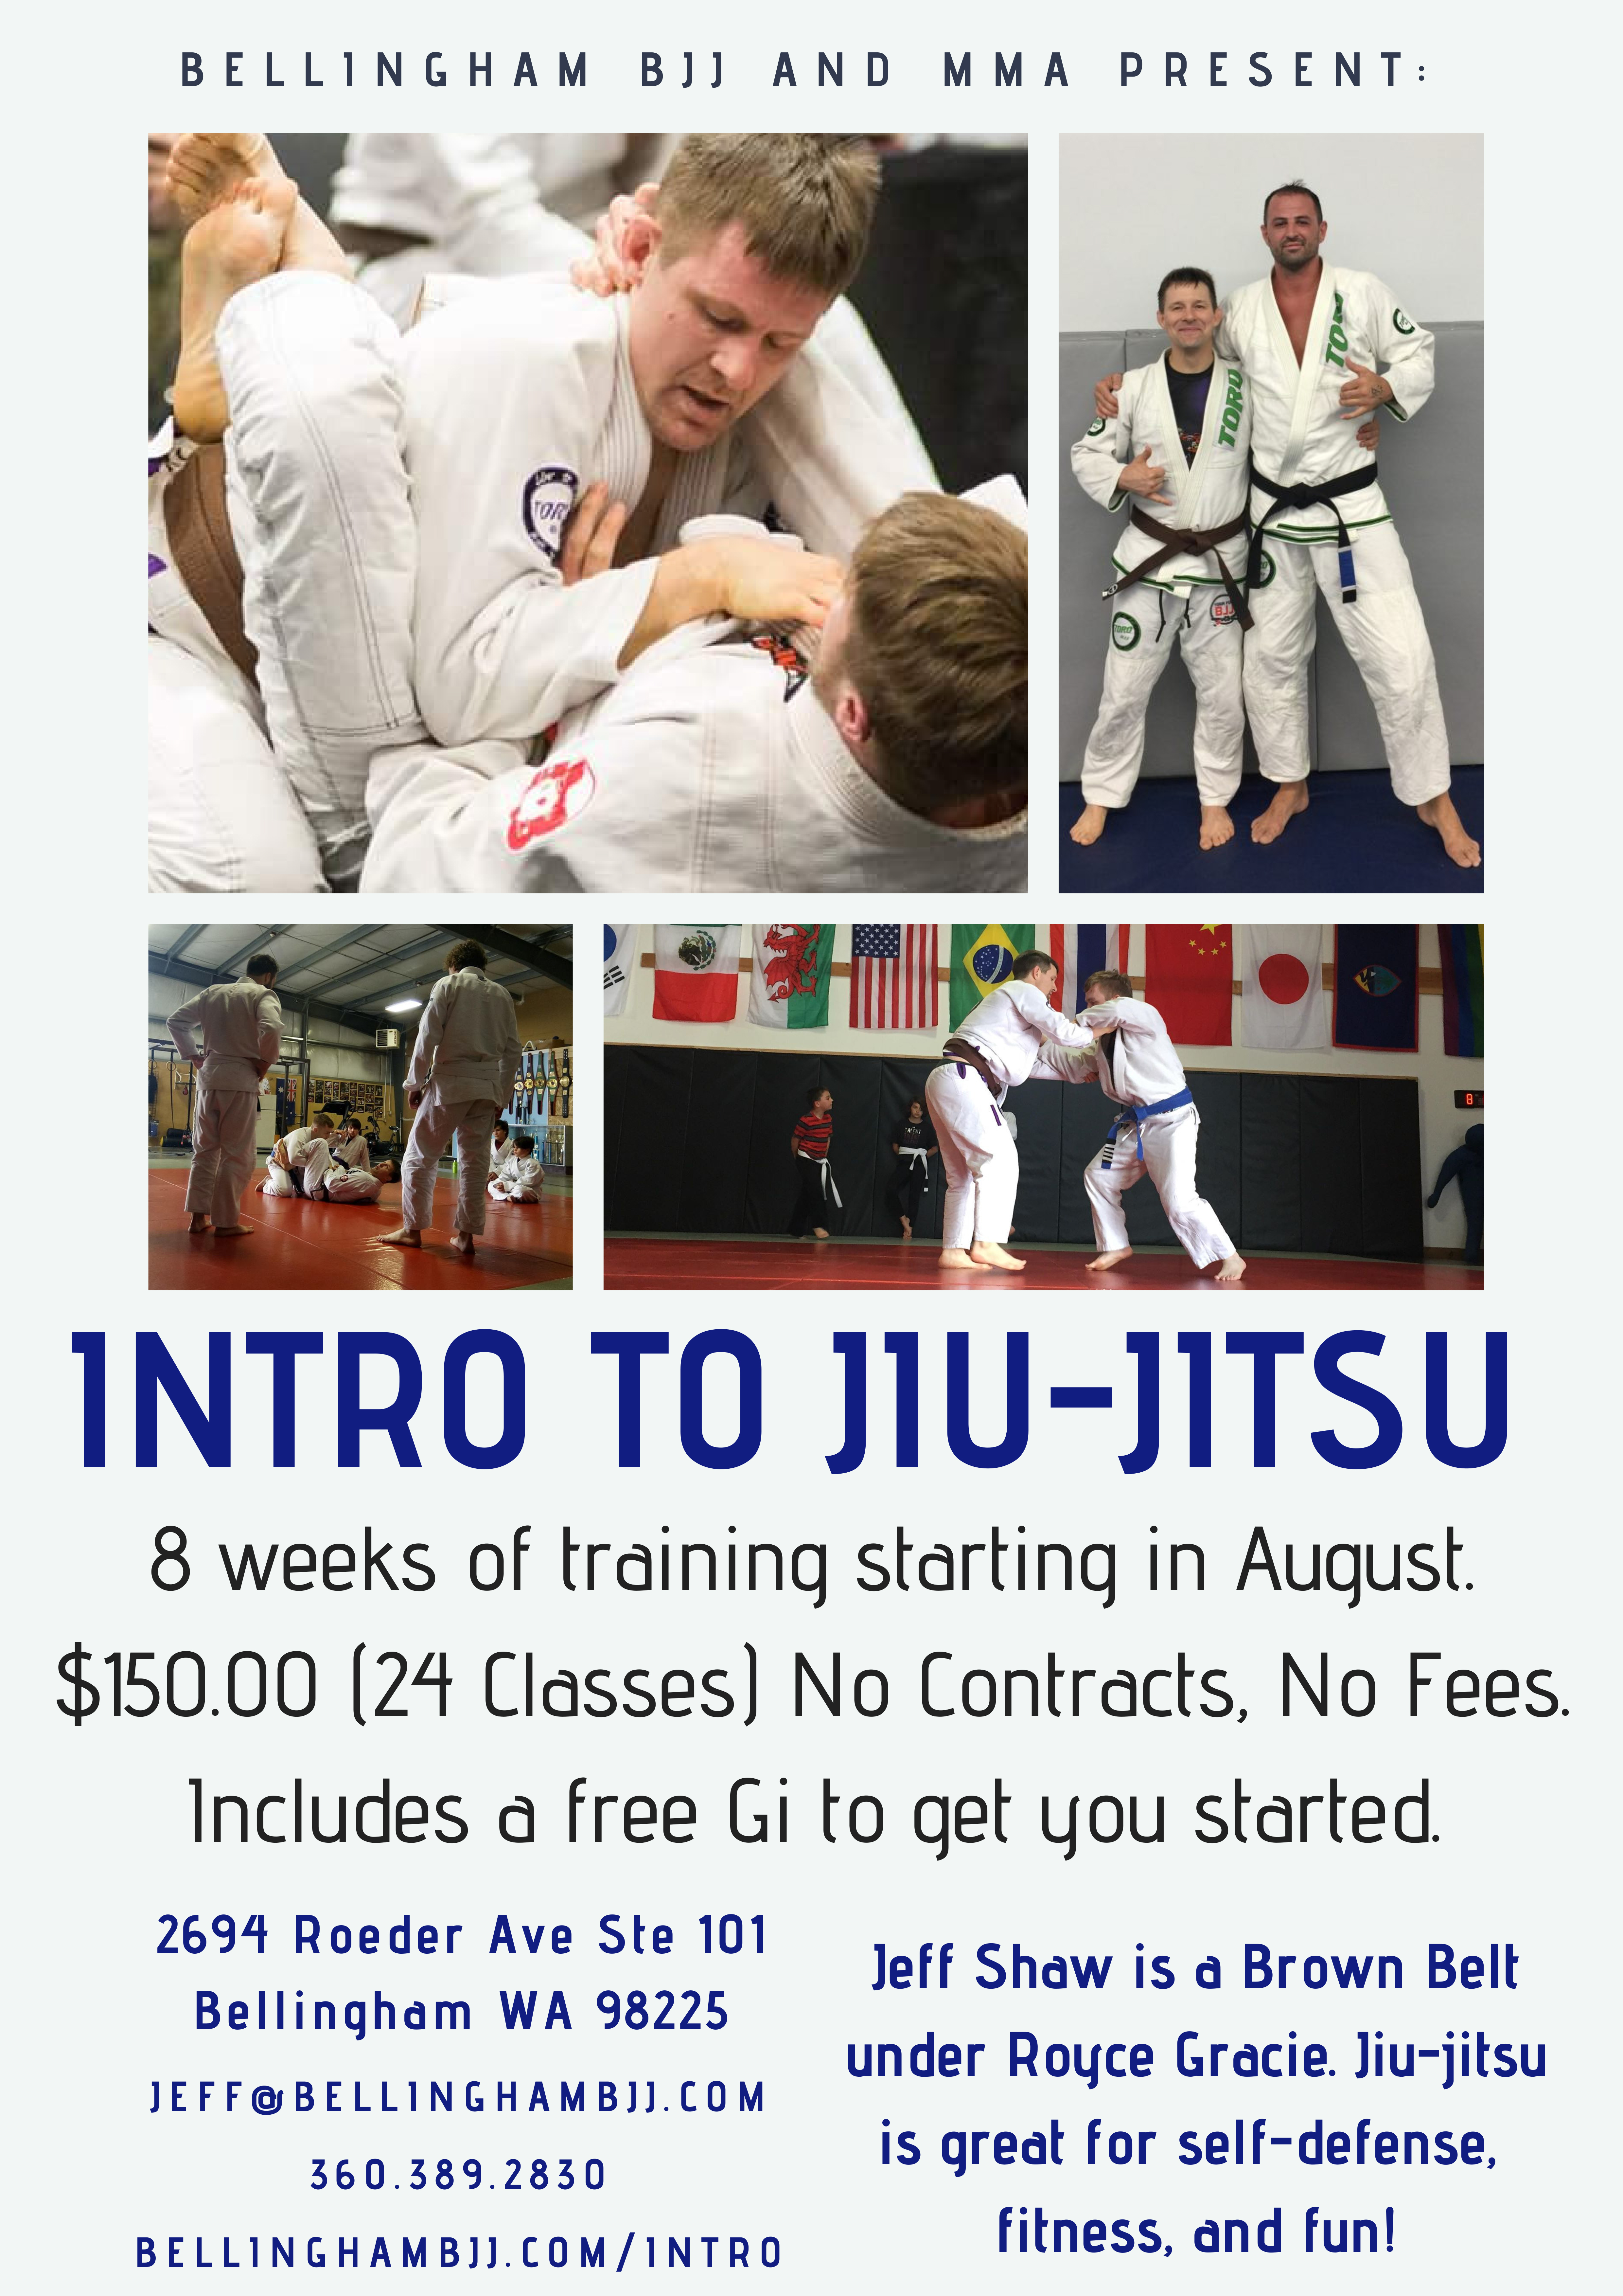 We’re offering an eight-week introduction to jiu-jitsu class!